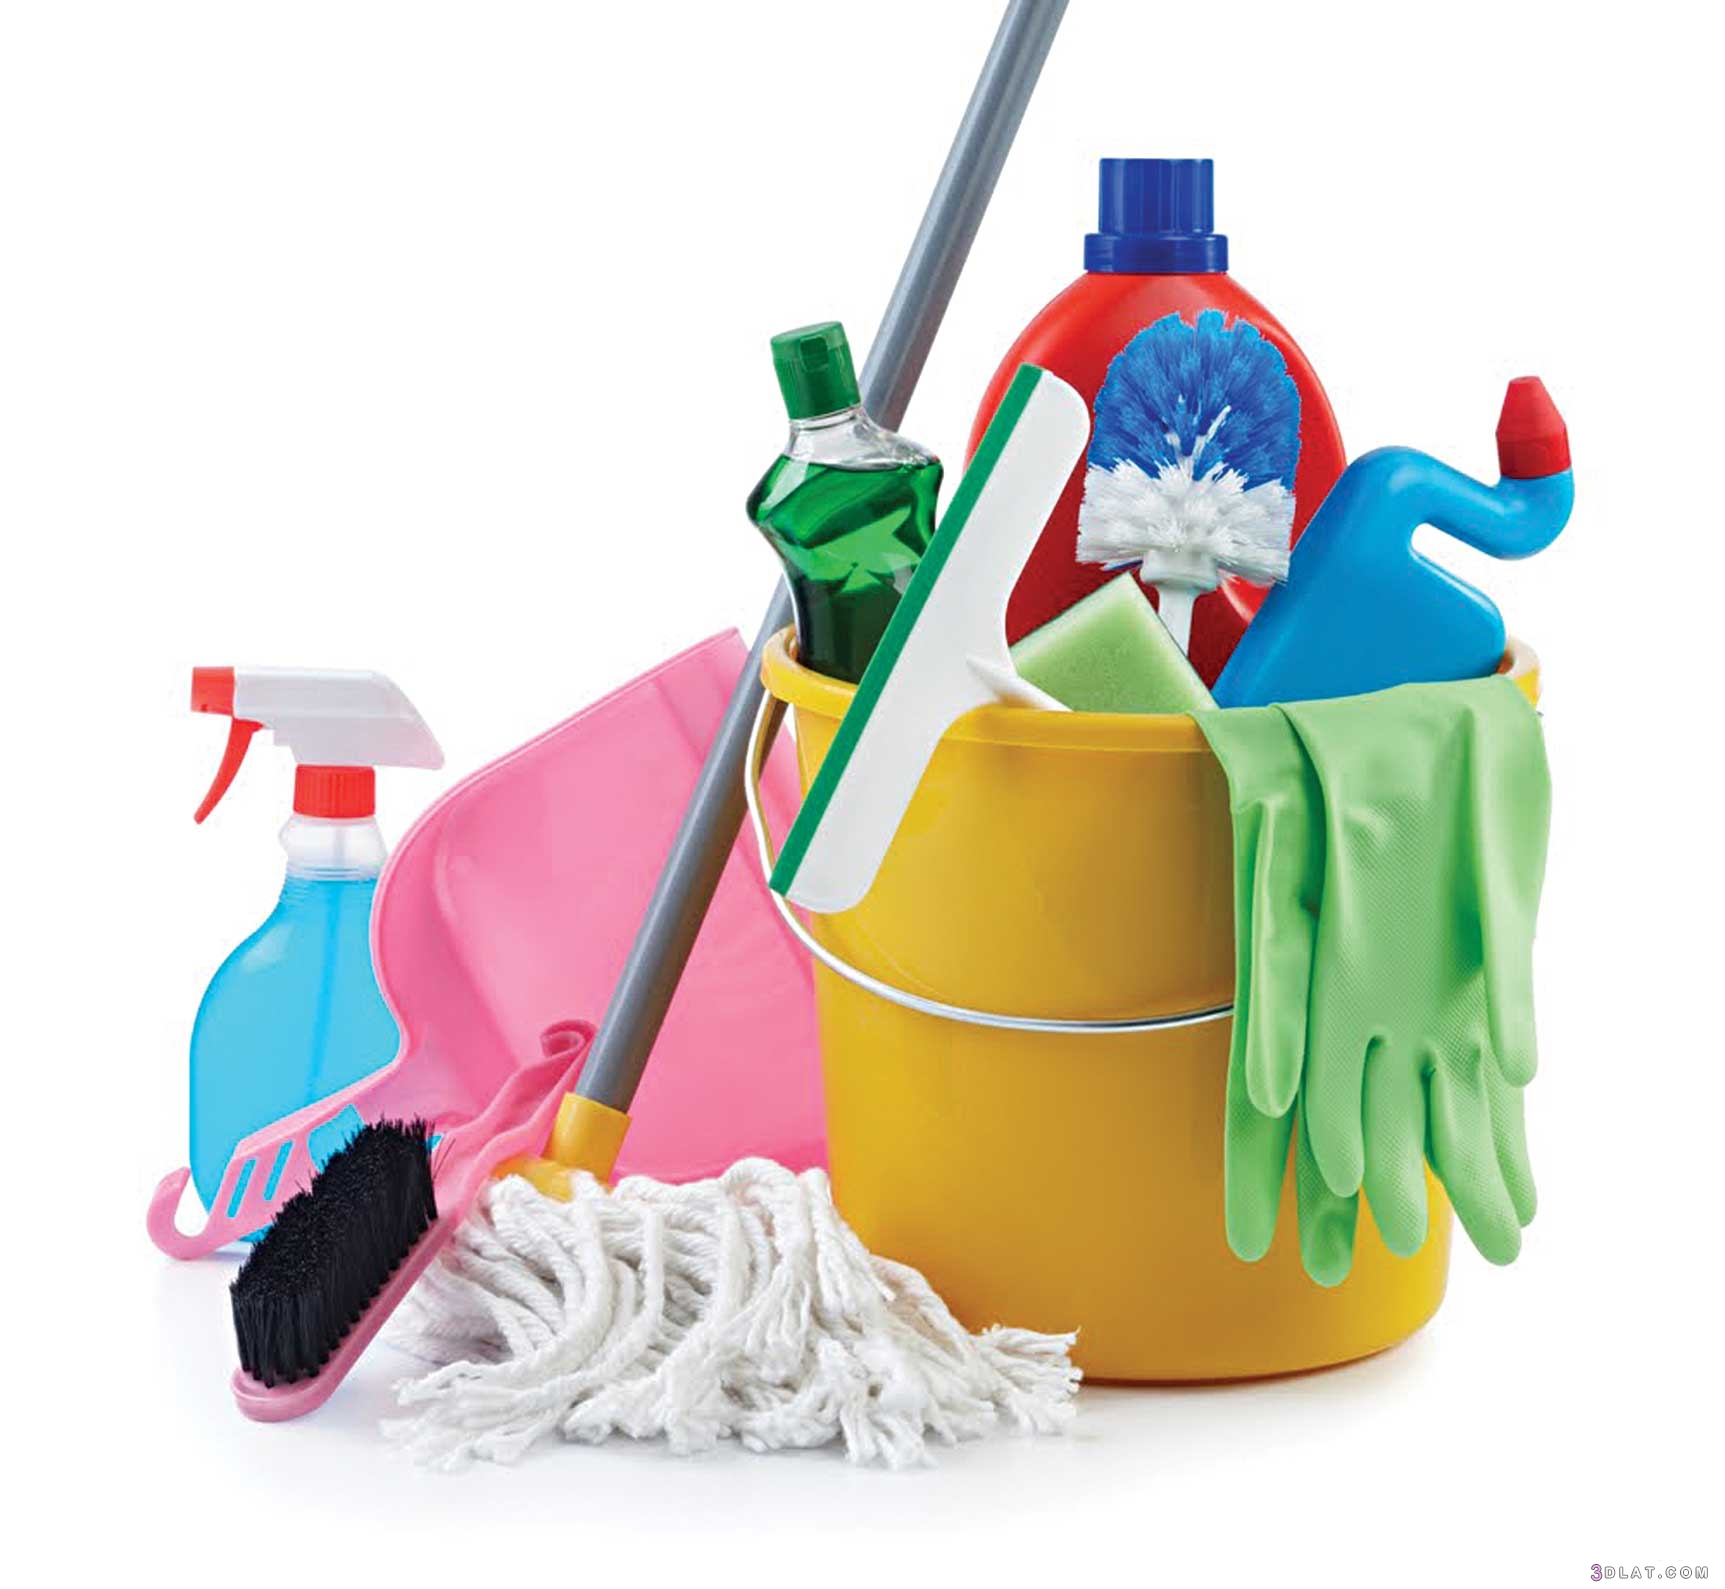 أضرار المنظفات المنزليه على صحة الإنسان   كيف يمكن أن تؤثر مواد التنظيف وم